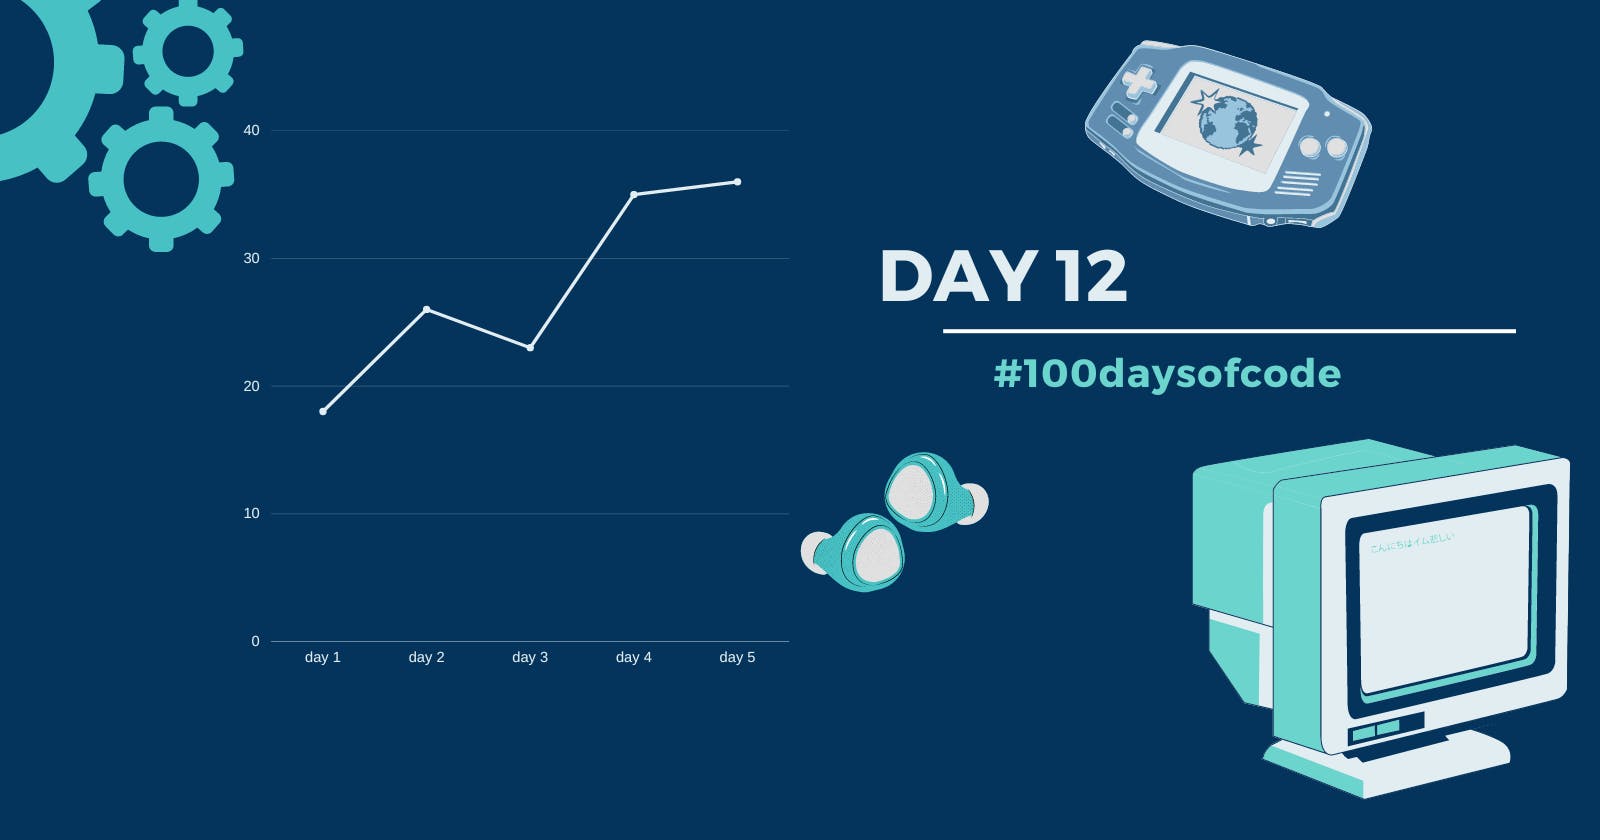 Day 12 in #100daysofcode challenge